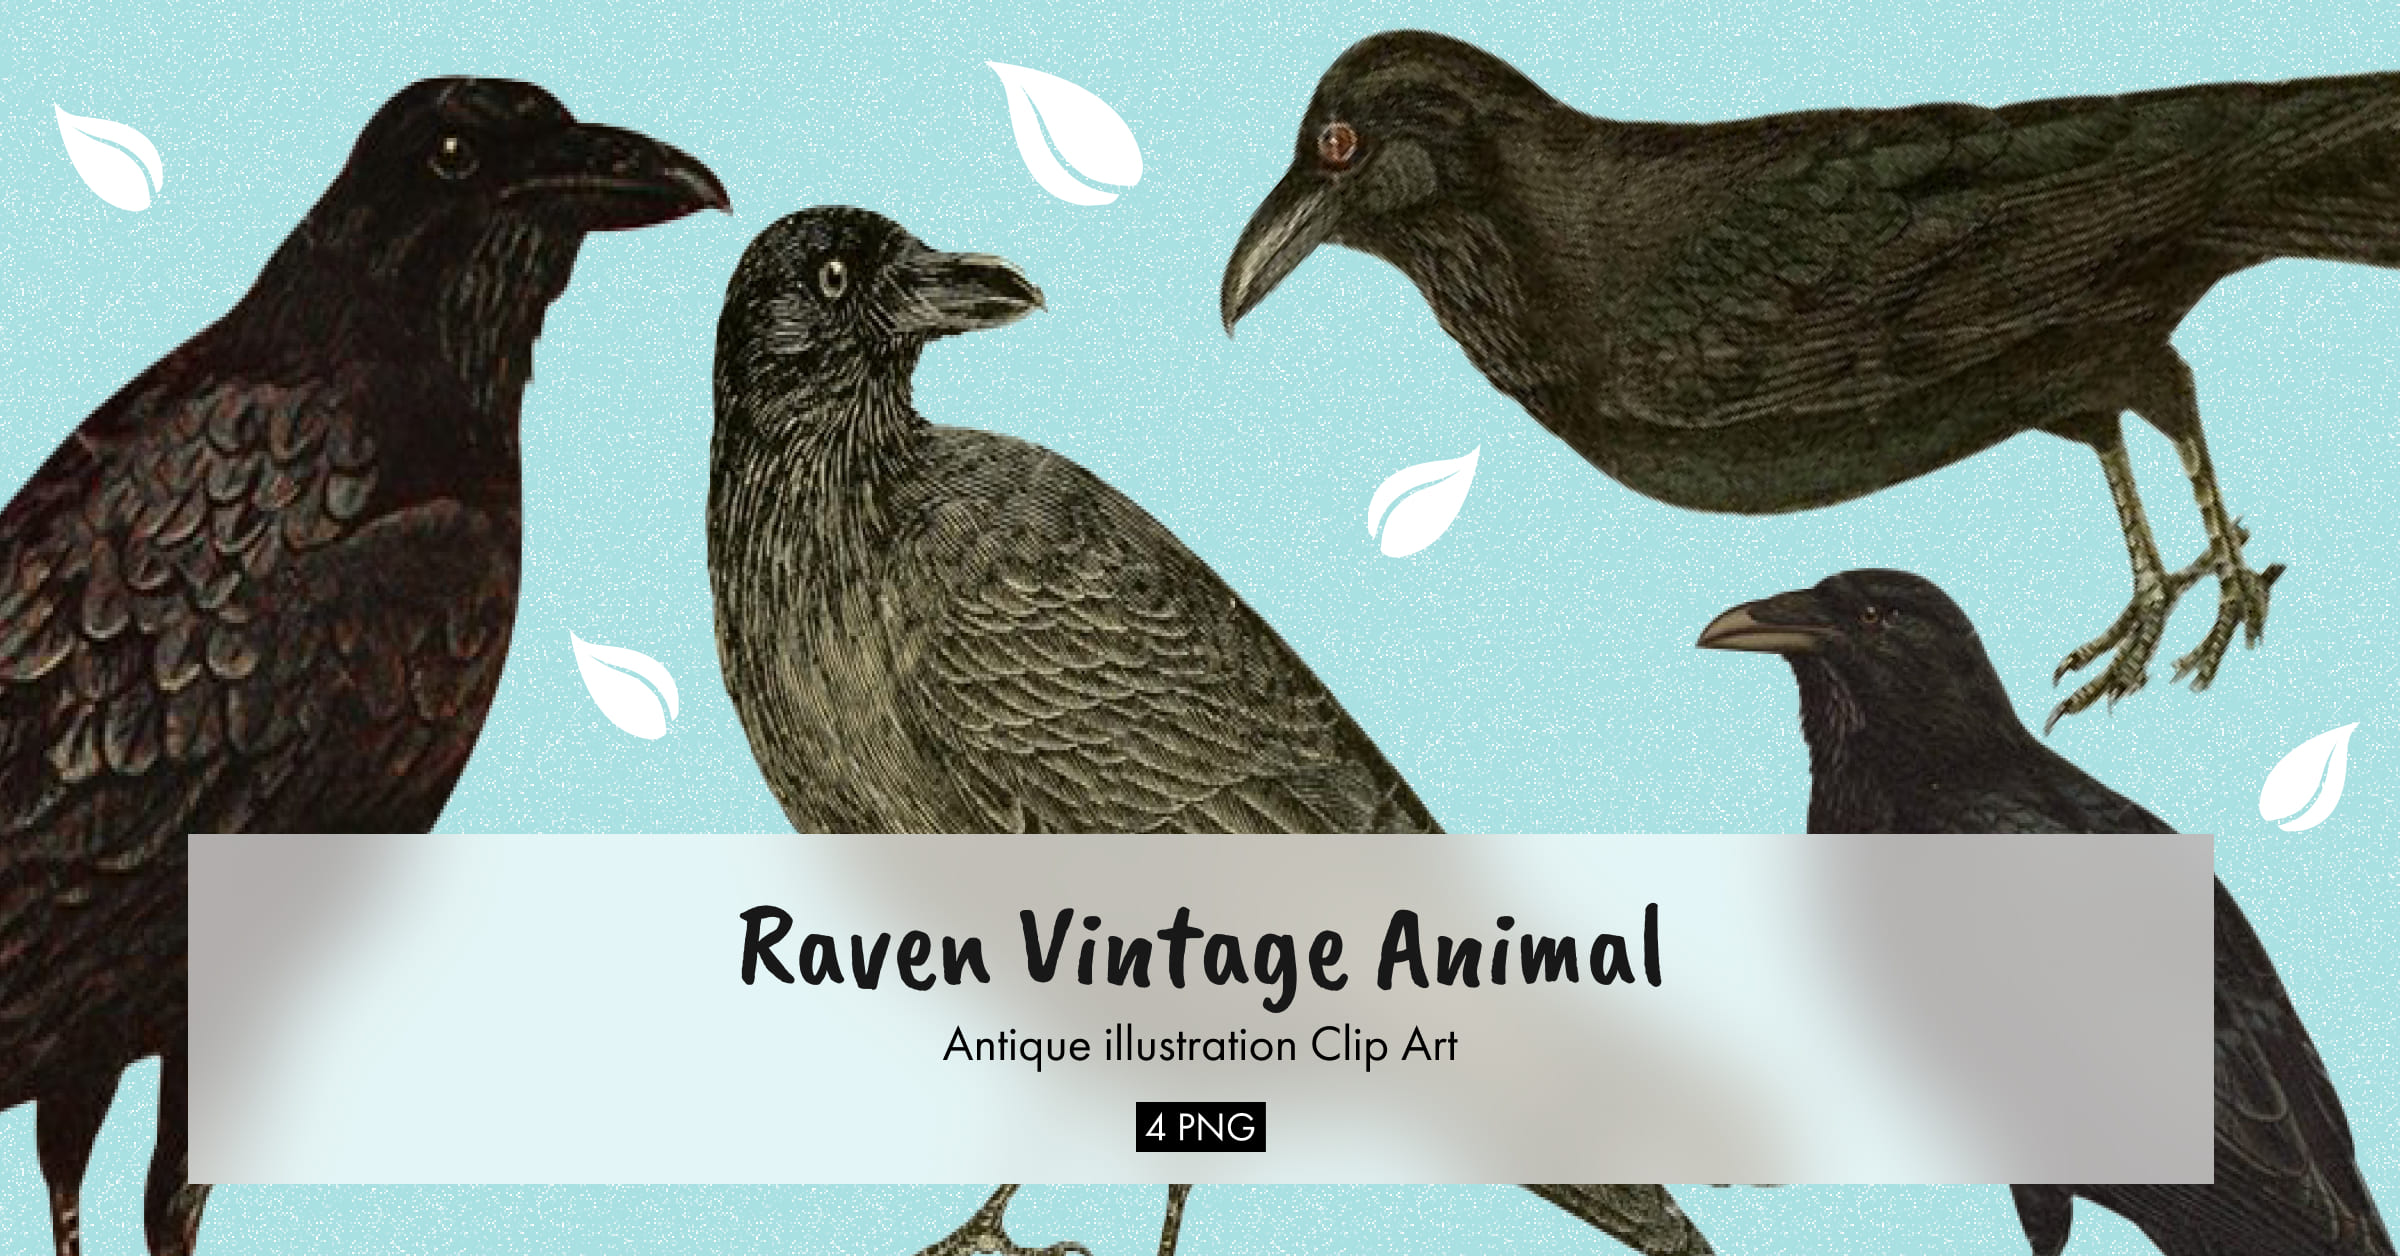 Raven vintage animal illustration clip art - Facebook image preview.